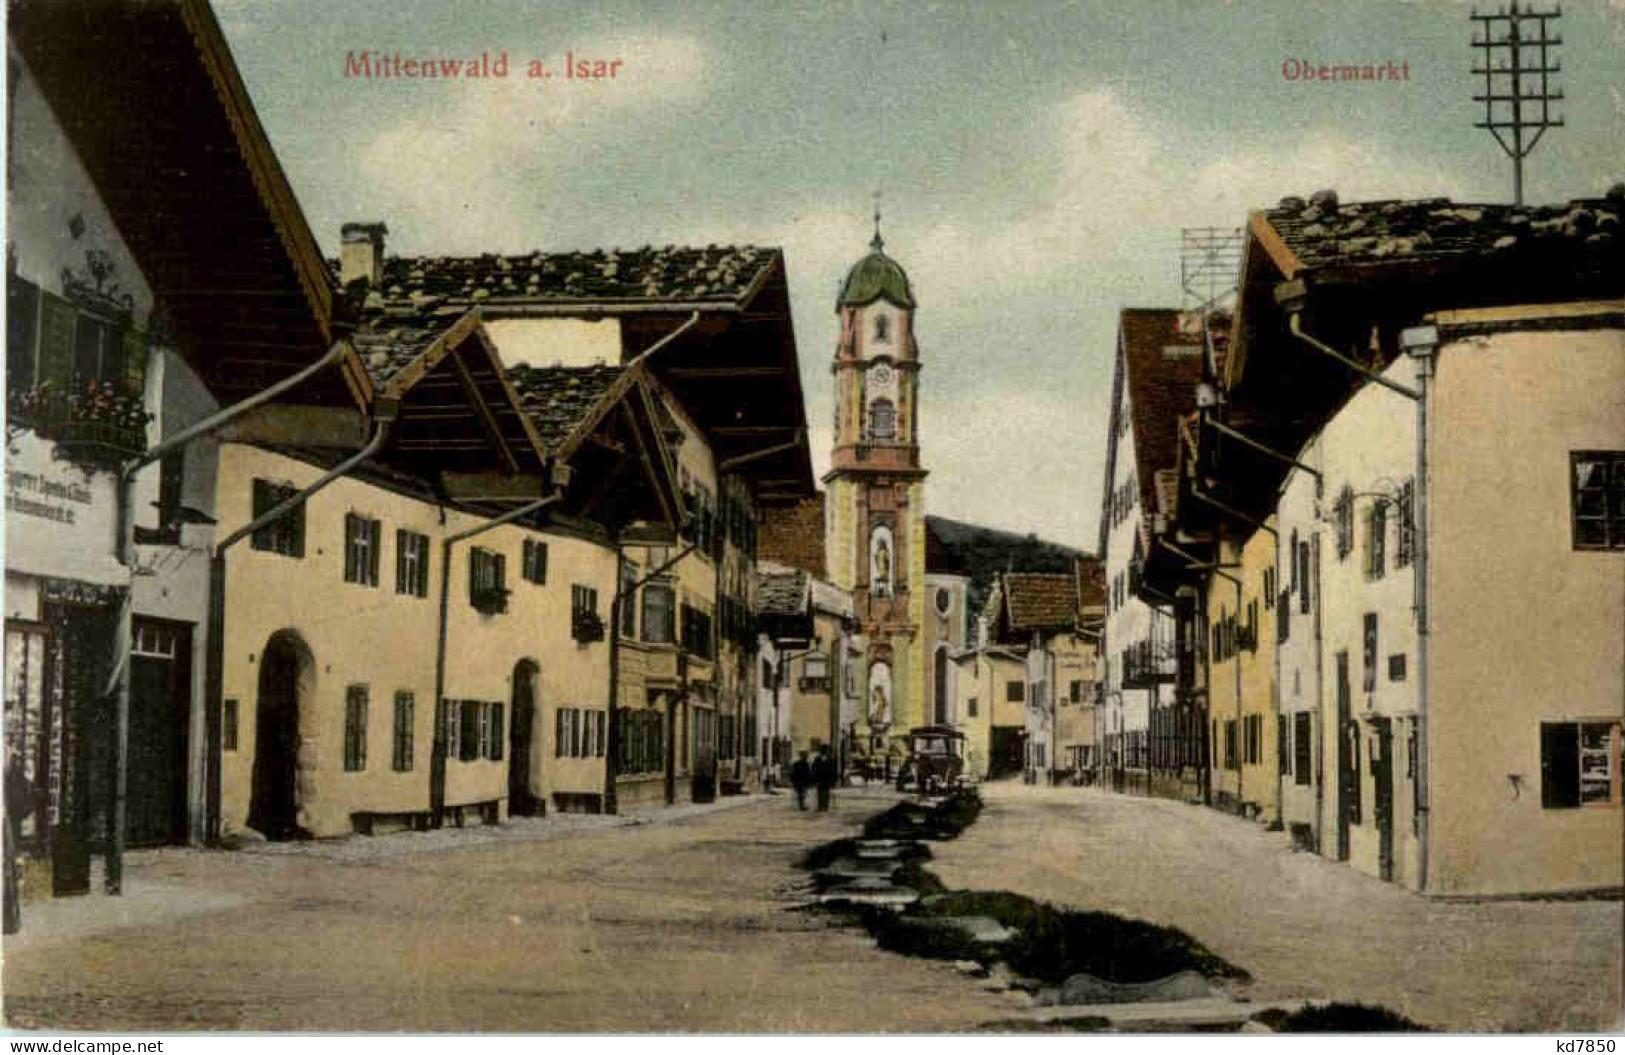 Mittenwald - Obermarkt - Mittenwald